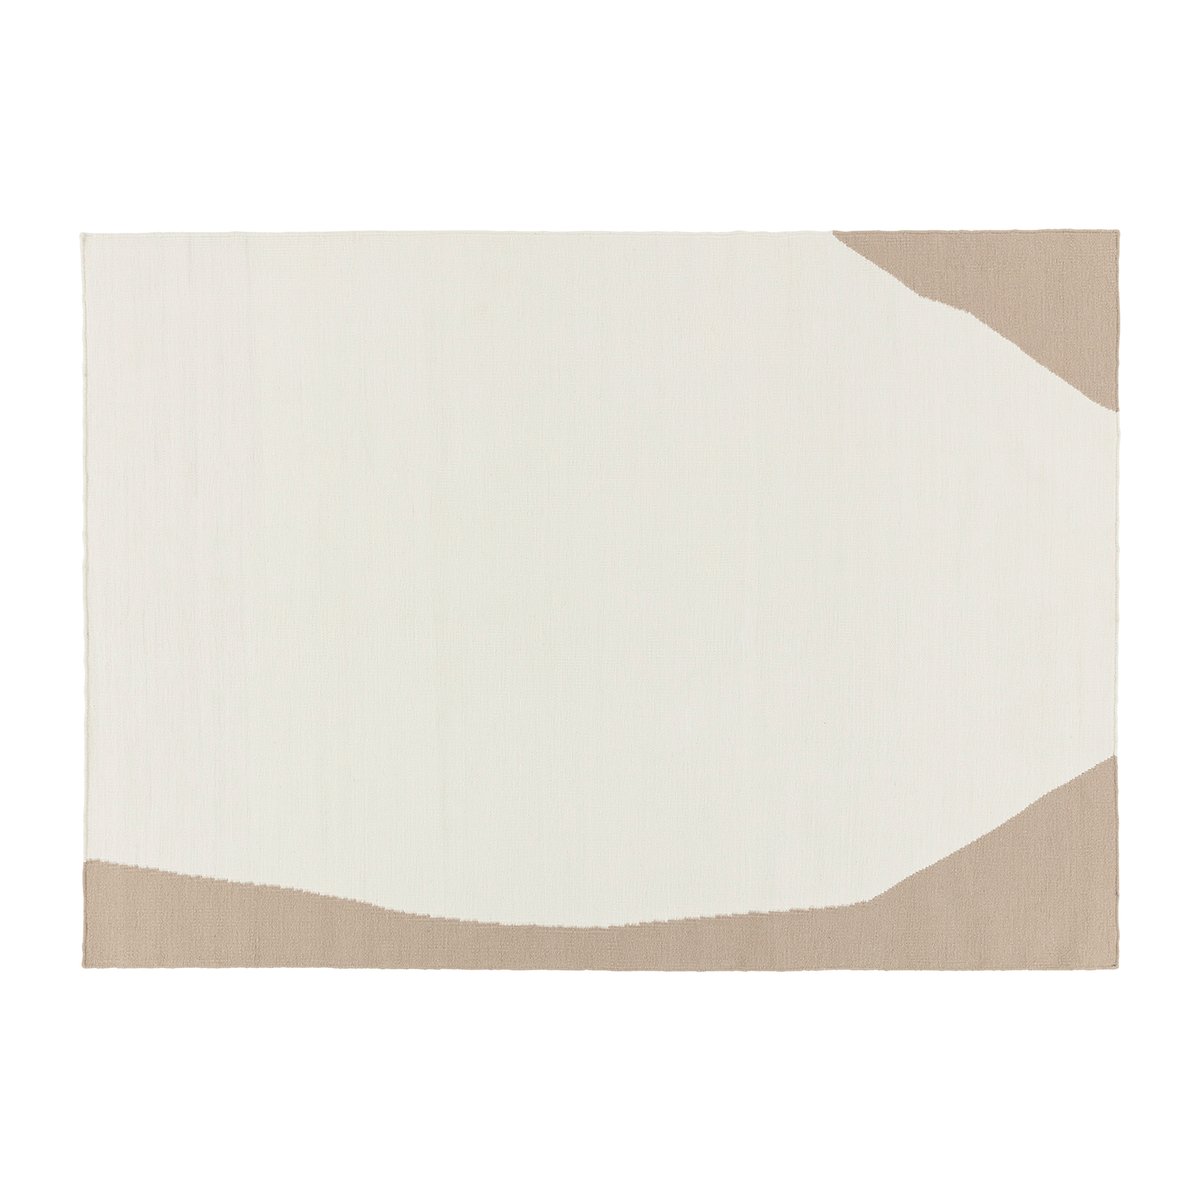 Scandi Living Flow kelim vloerkleed wit-beige 170x240 cm